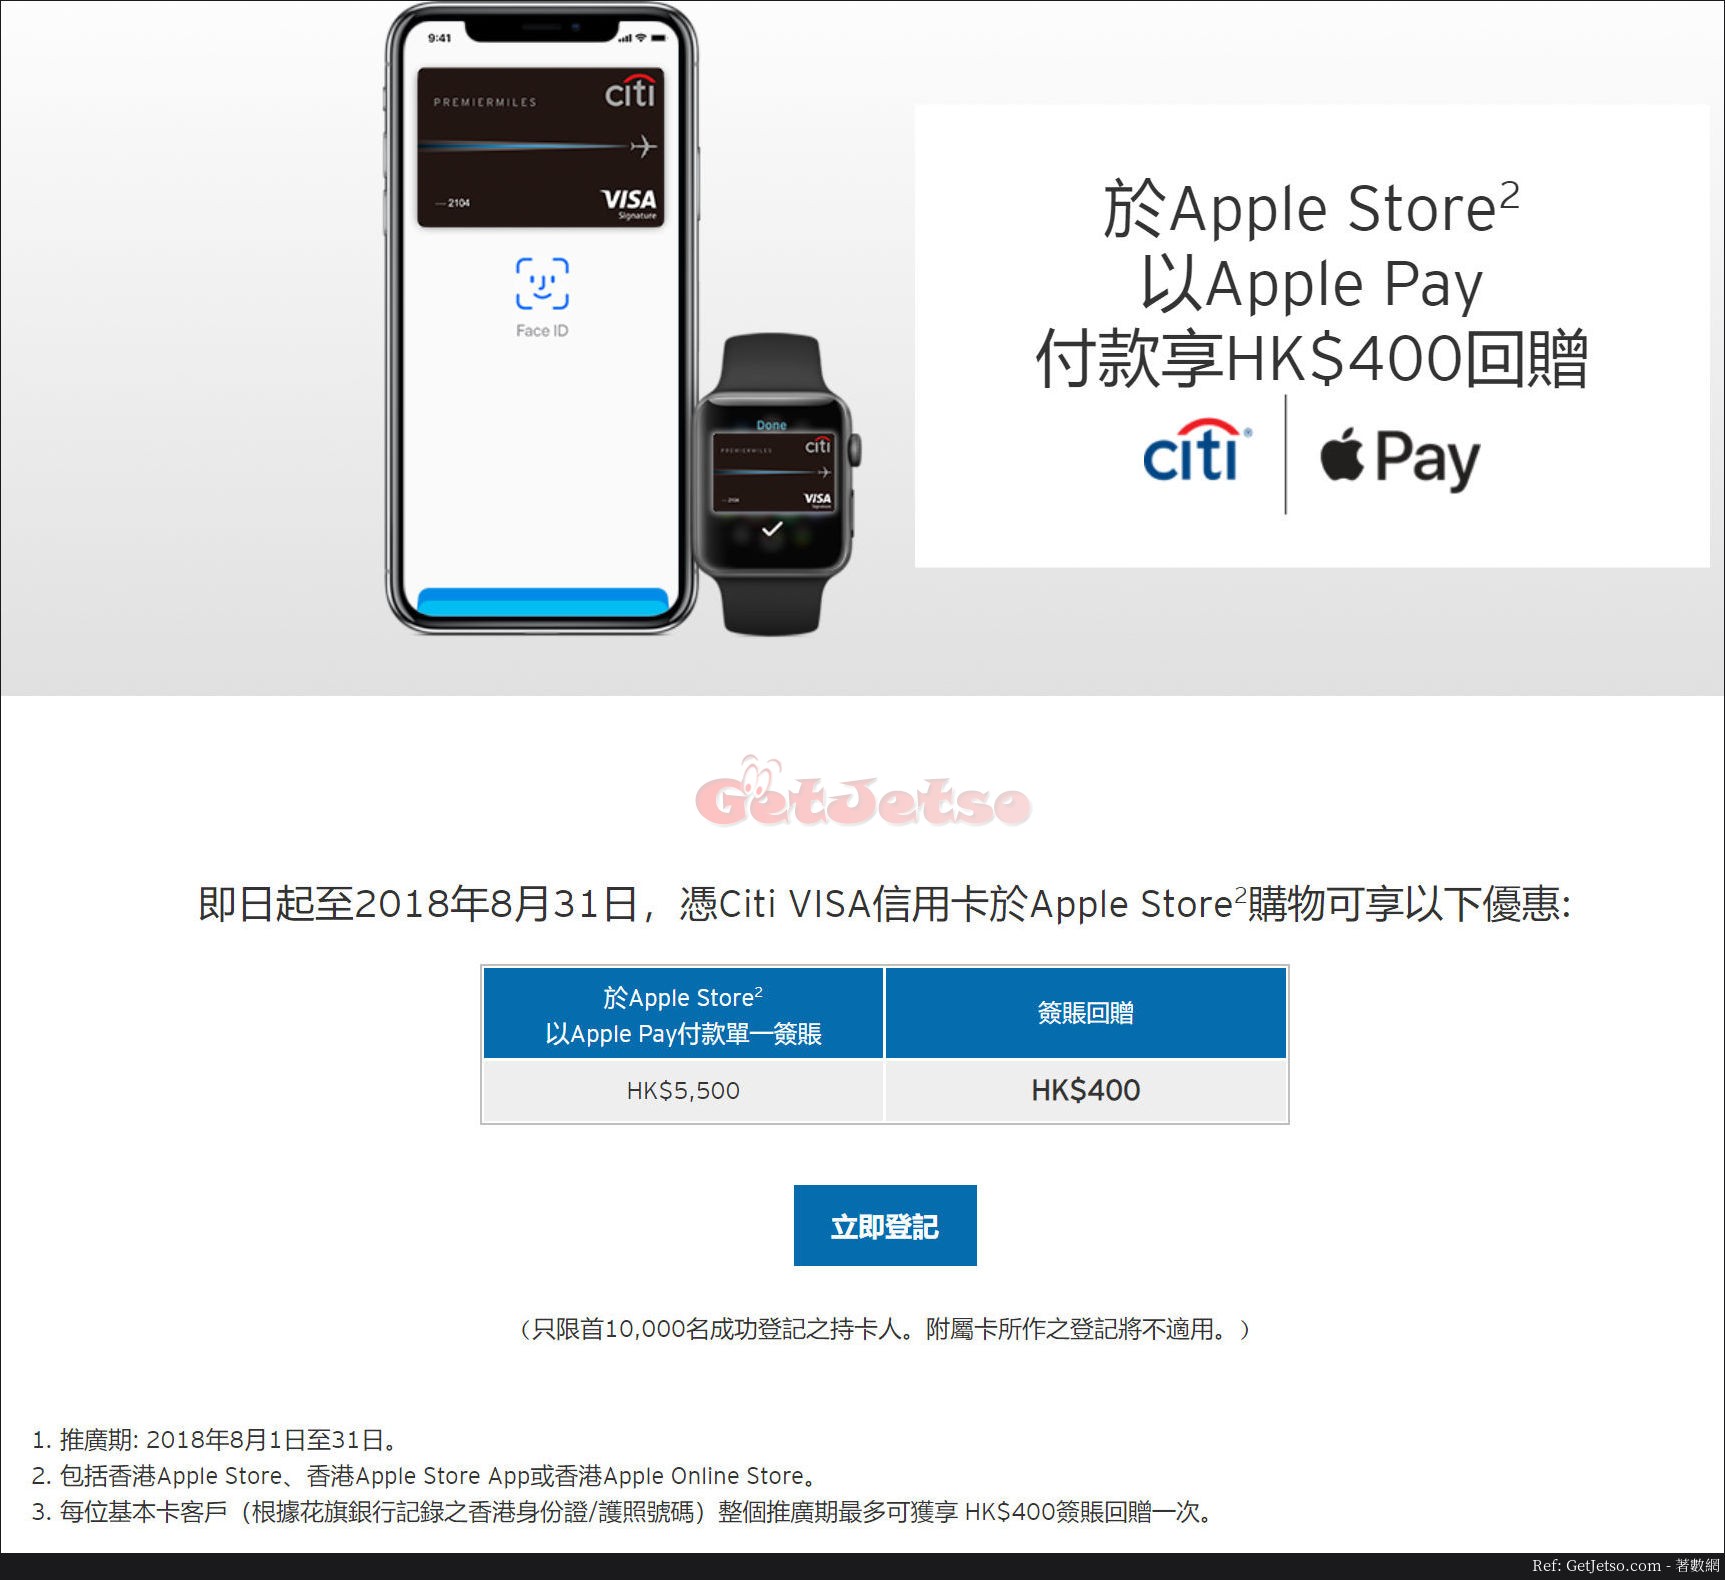 Apple Store以Apple Pay付款享0回贈優惠@Citi VISA信用卡(至18年8月31日)圖片1